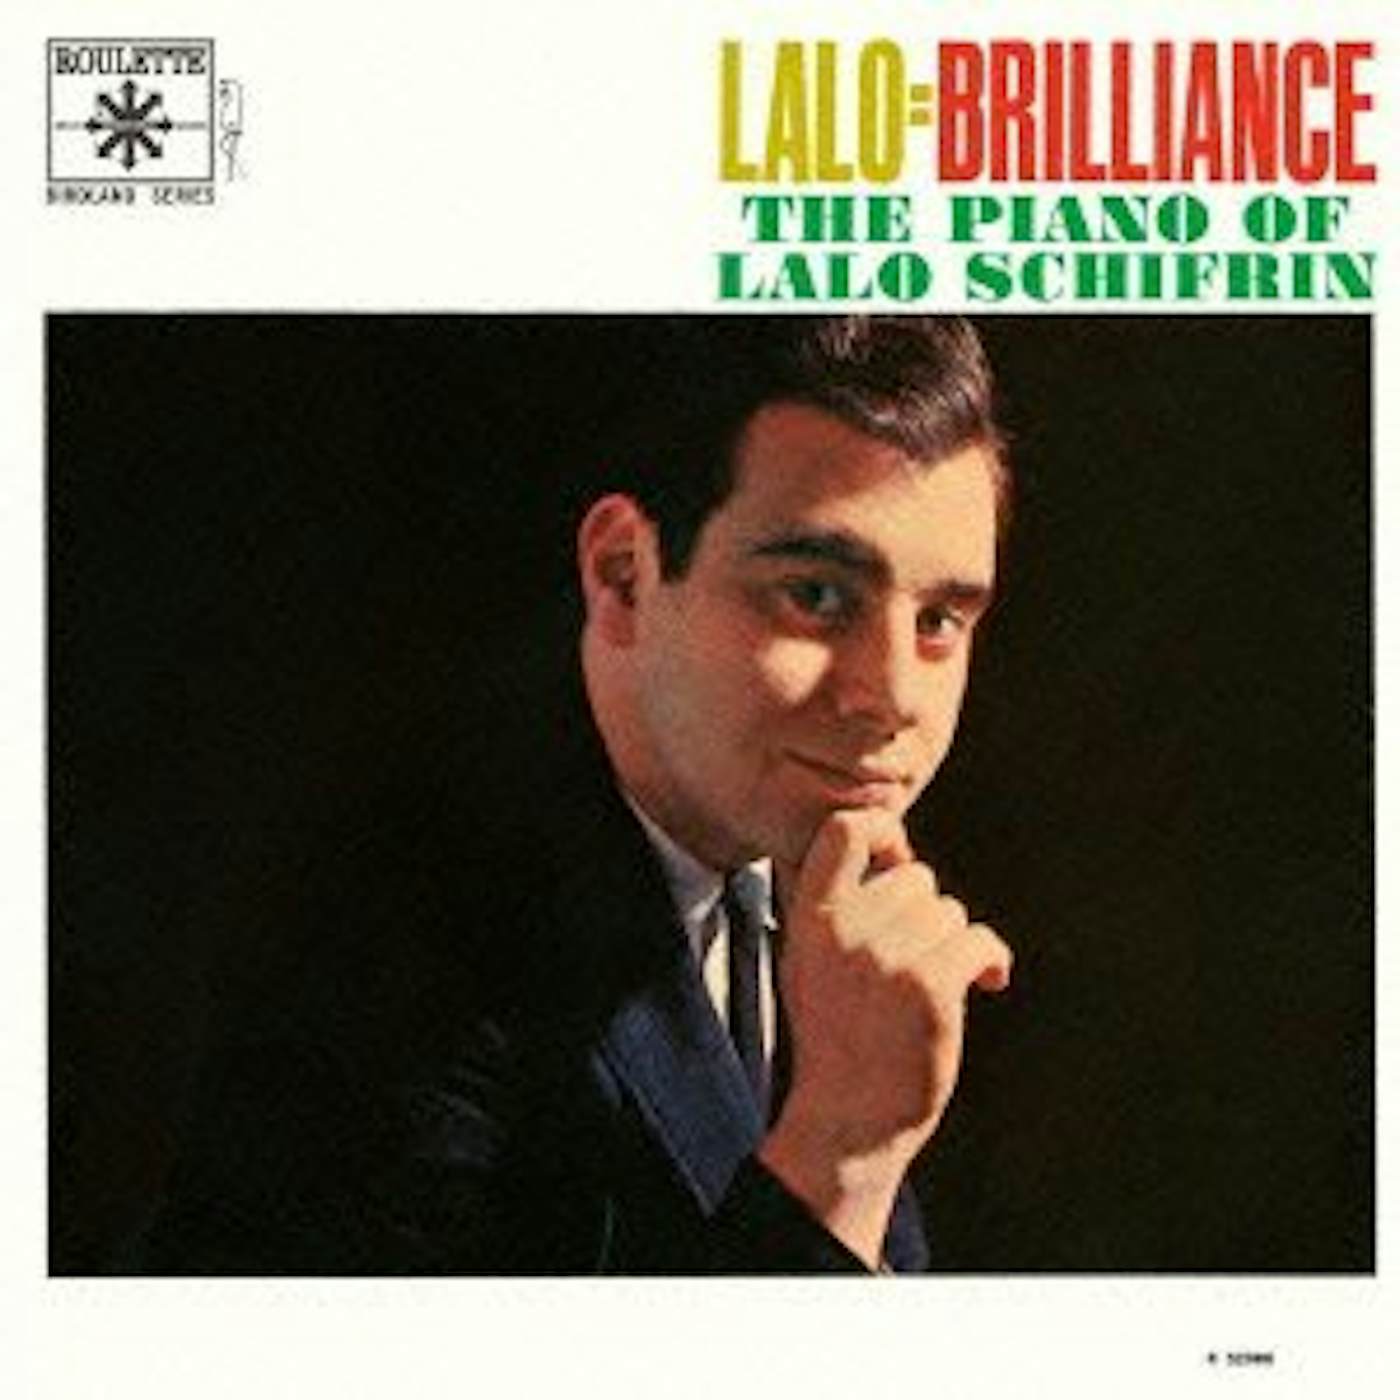 Lalo Schifrin LALO BRILLIANCE CD